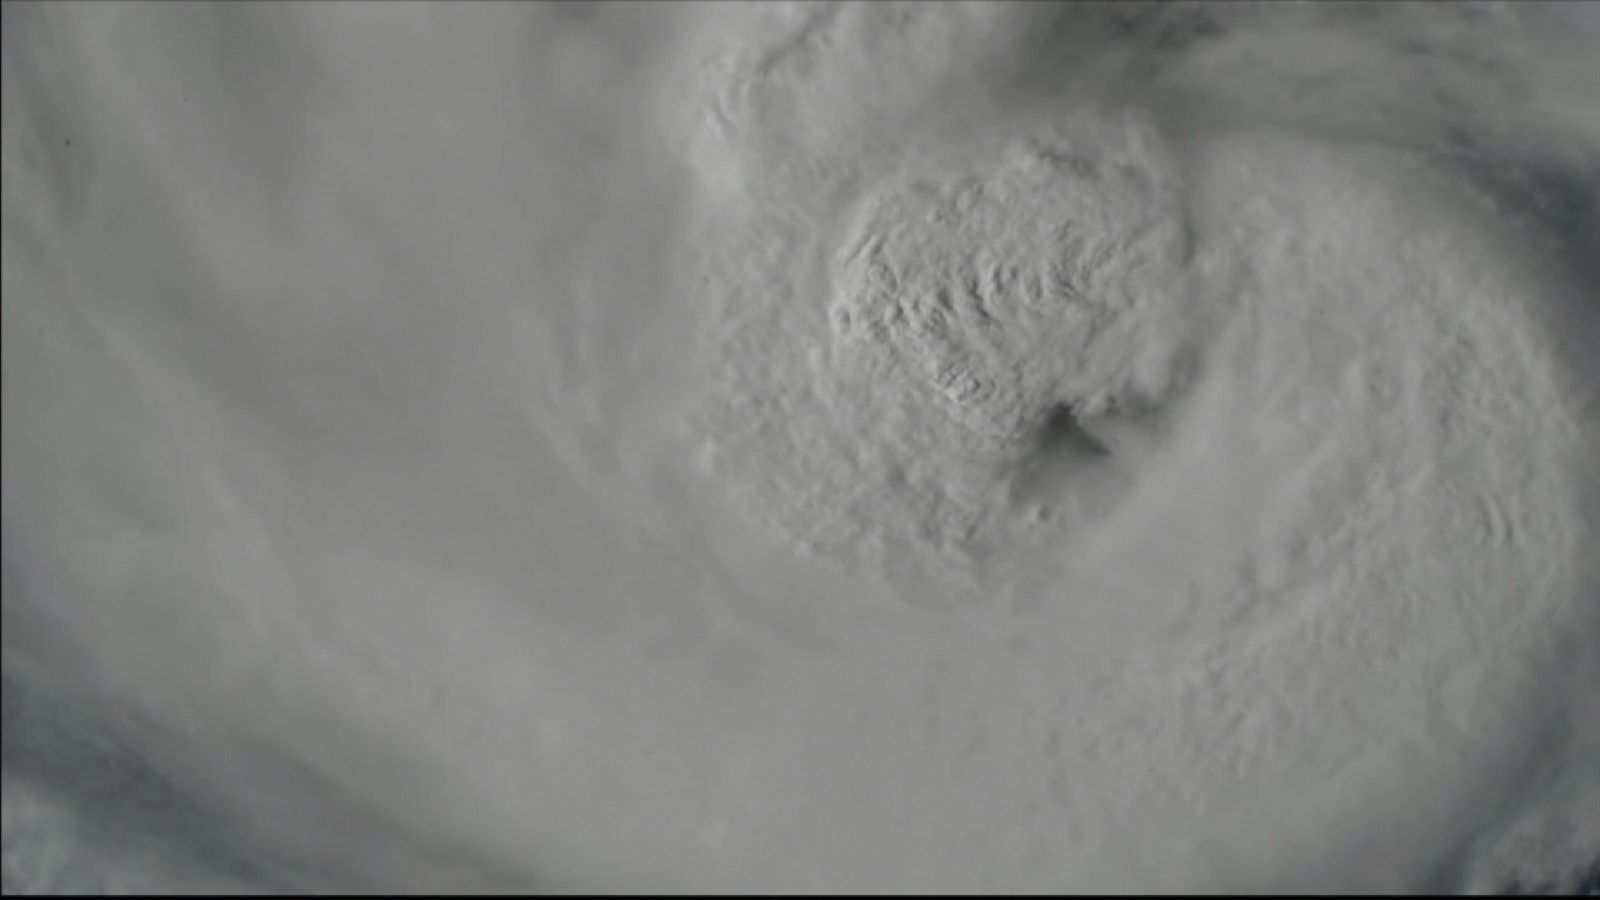 Hurricane Harvey filmed from space station | News UK Video News | Sky News